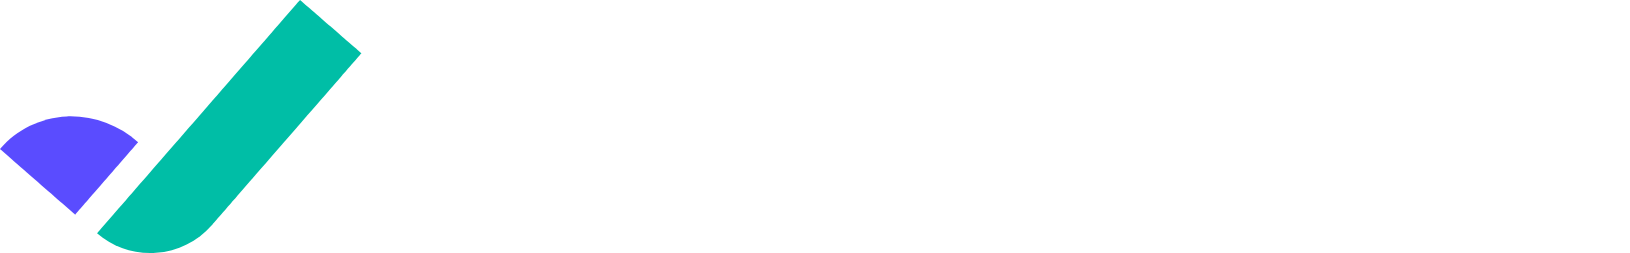 Riskified logo large for dark backgrounds (transparent PNG)